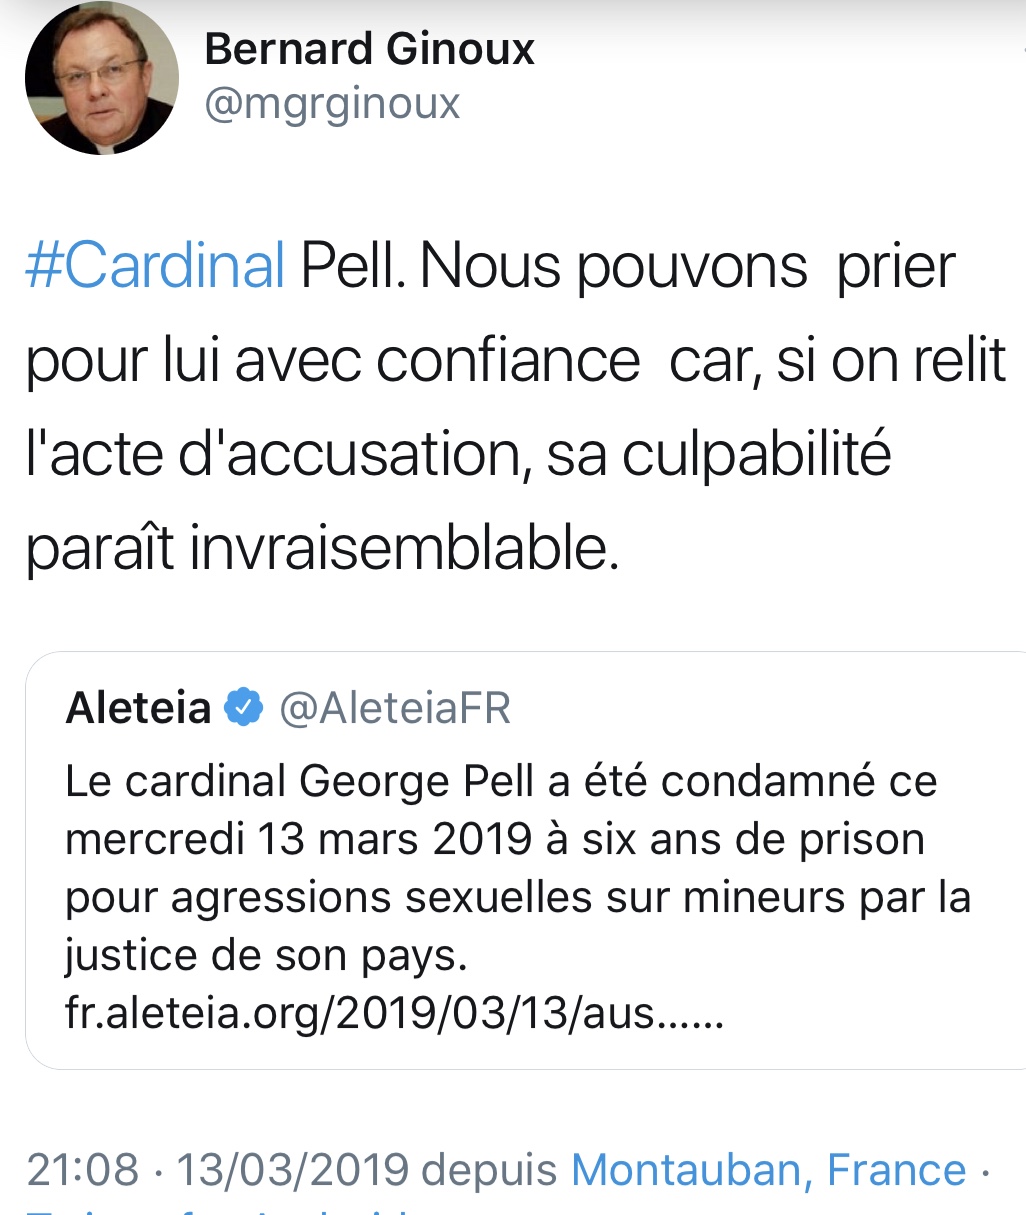 Tweet de soutien de Mgr Bernard Ginoux au cardinal Pell